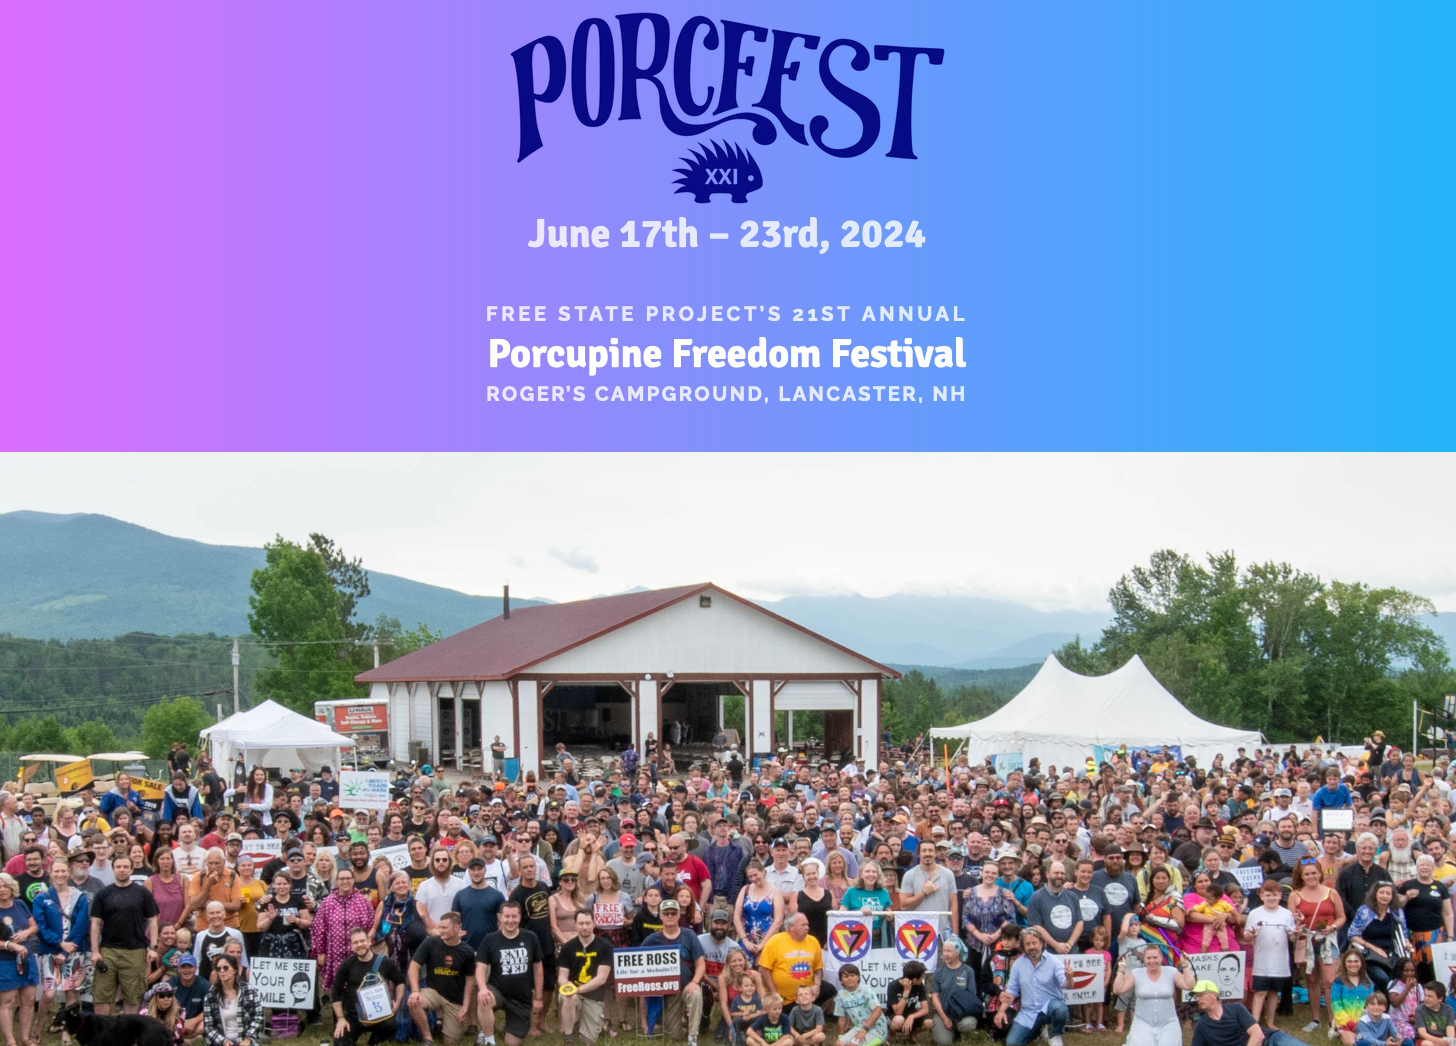 Porcfest 2024